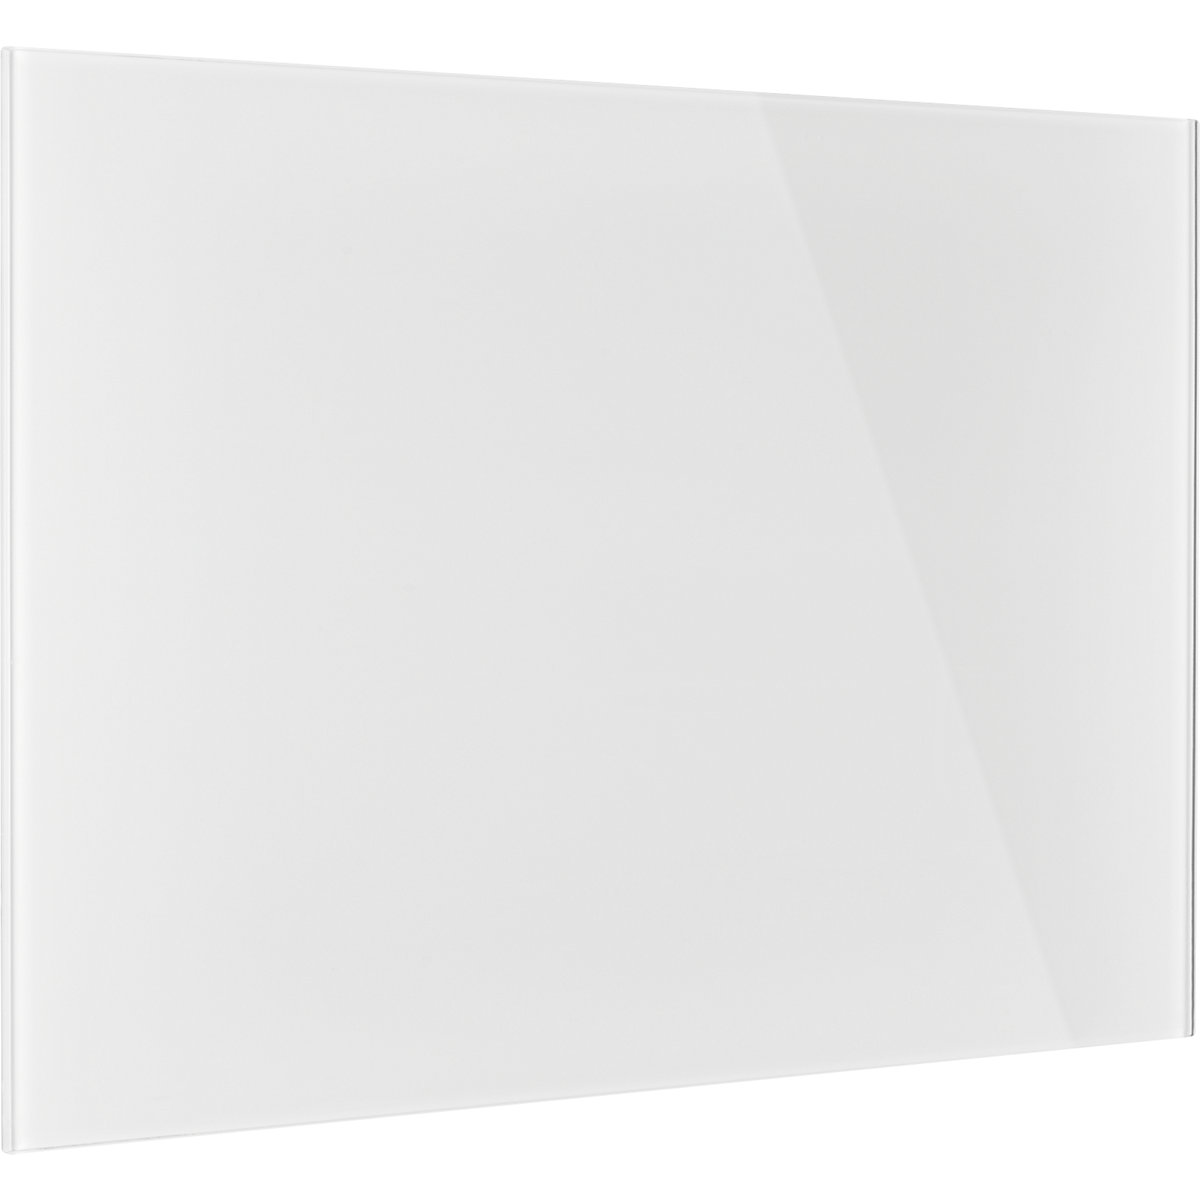 magnetoplan – Dizajnerska staklena ploča, magnetna, ŠxV 600 x 400 mm, u briljant bijeloj boji